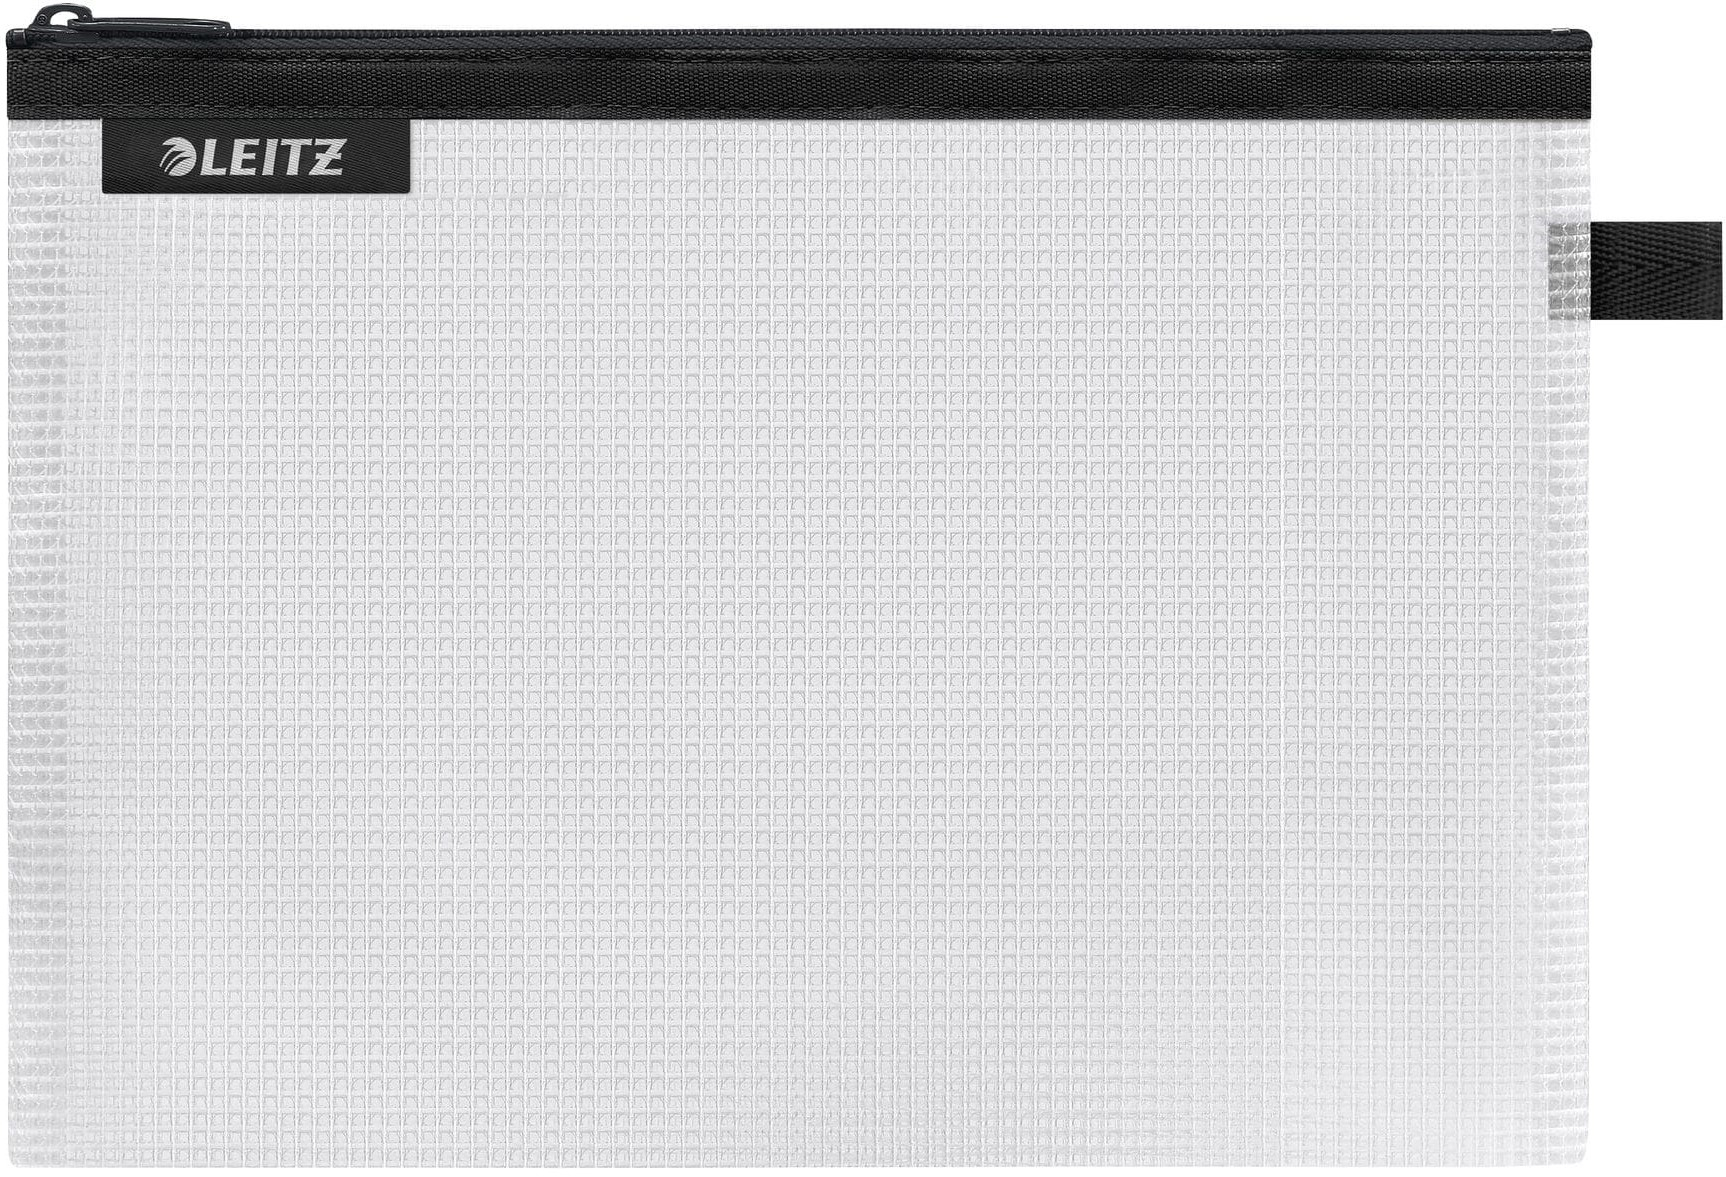 LEITZ Pochette WTraveller 4025-00-95 M noire